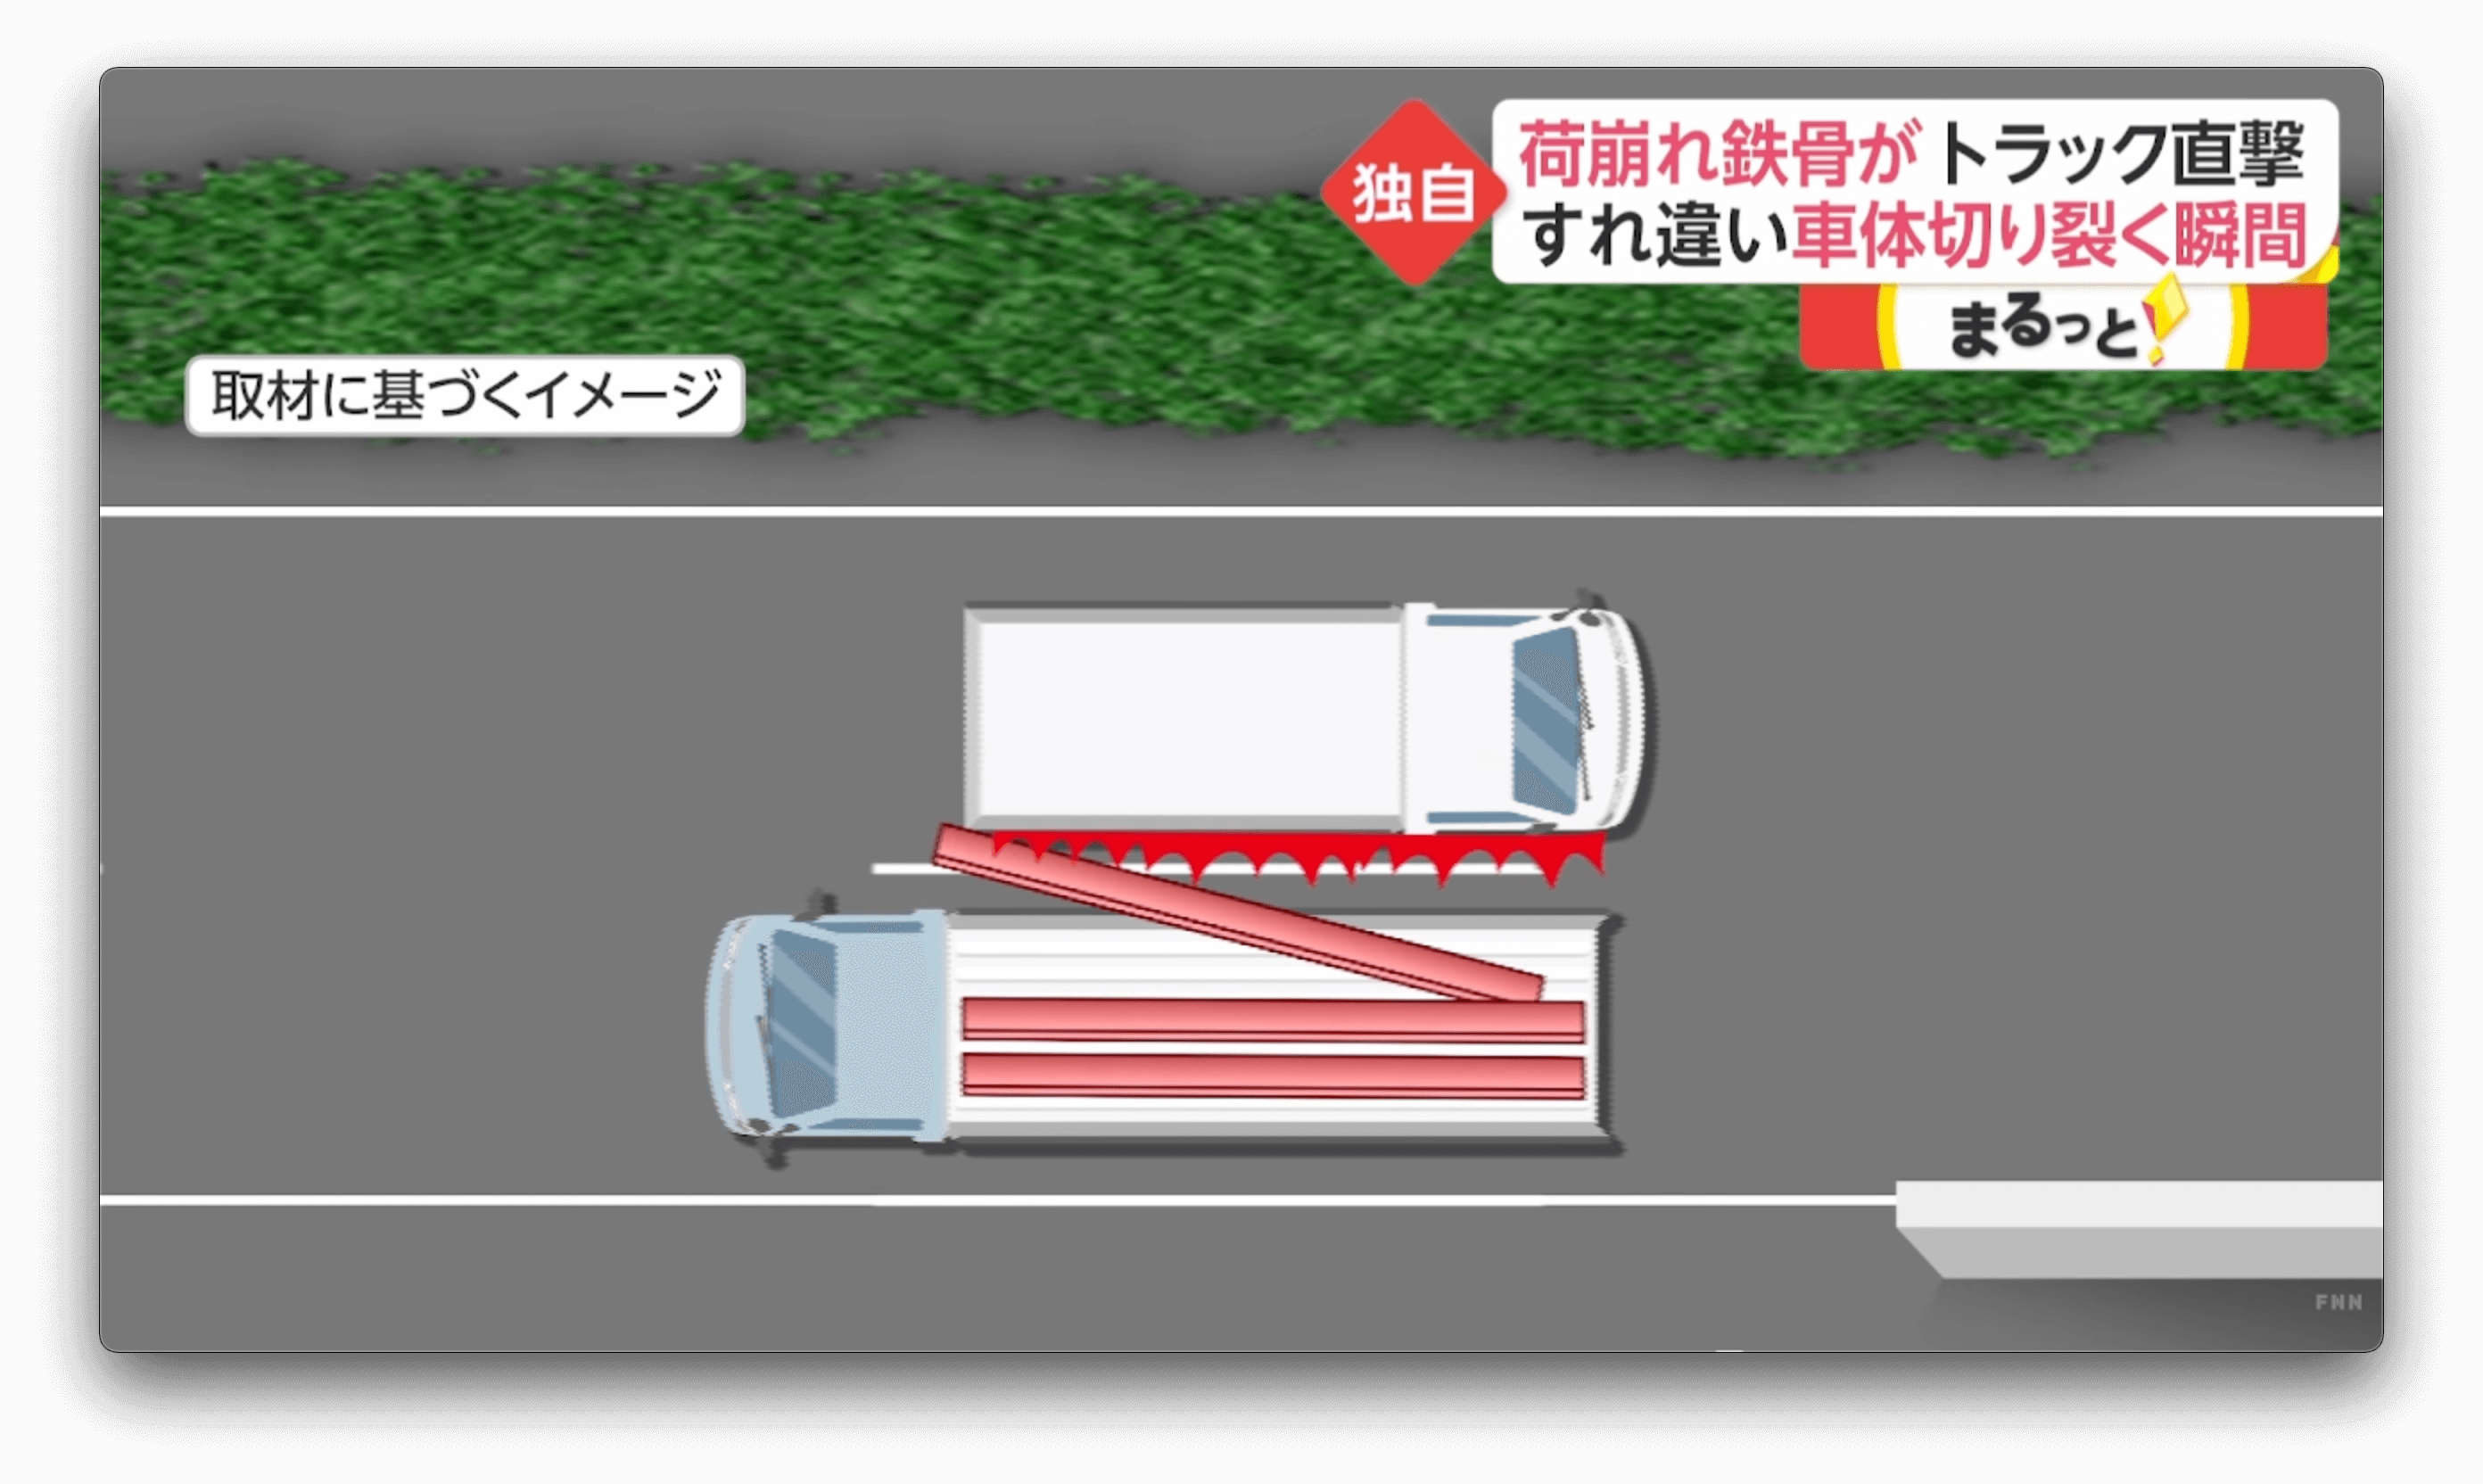 Caminhão é rasgado em acidente de trânsito no Japão